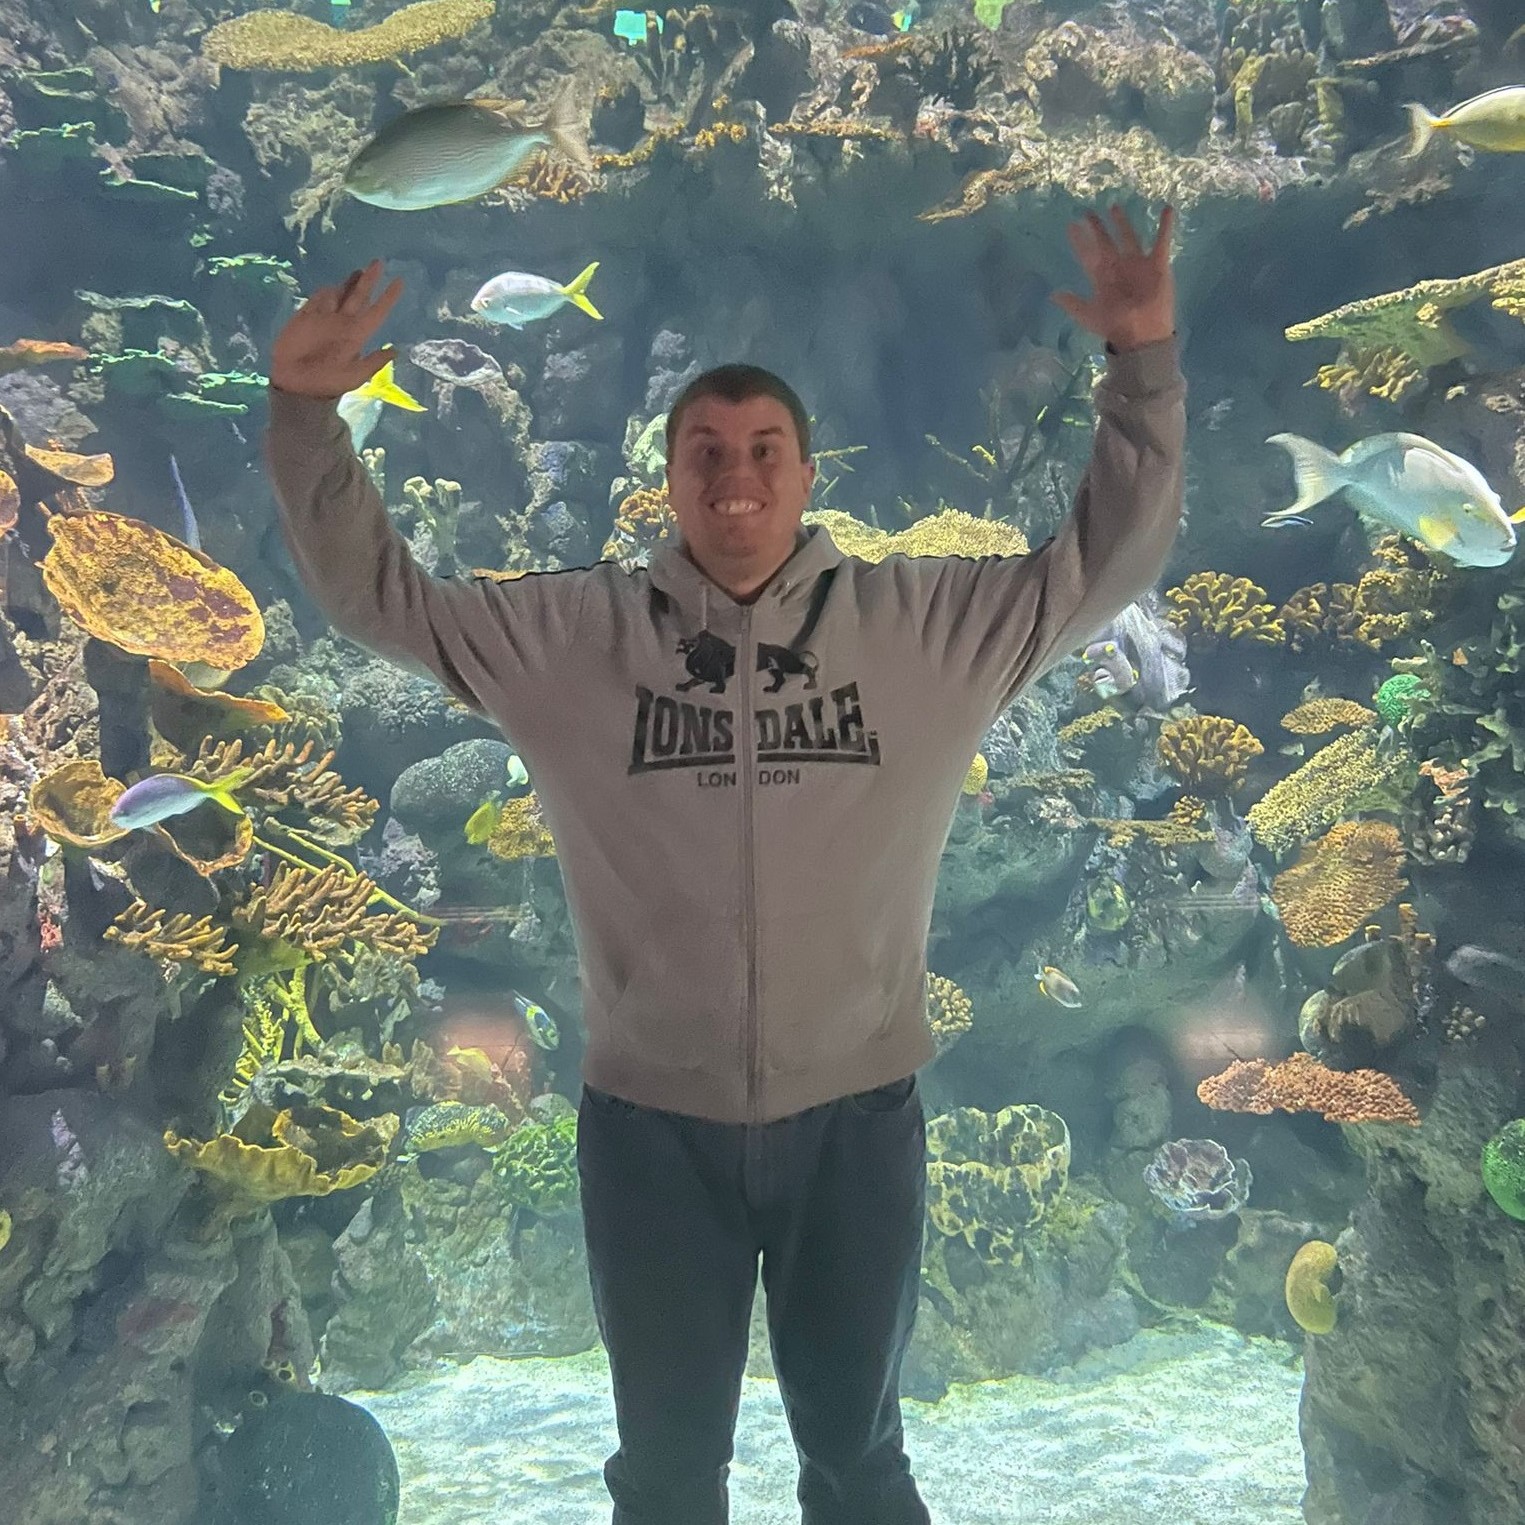 Visit to the Deep aquarium